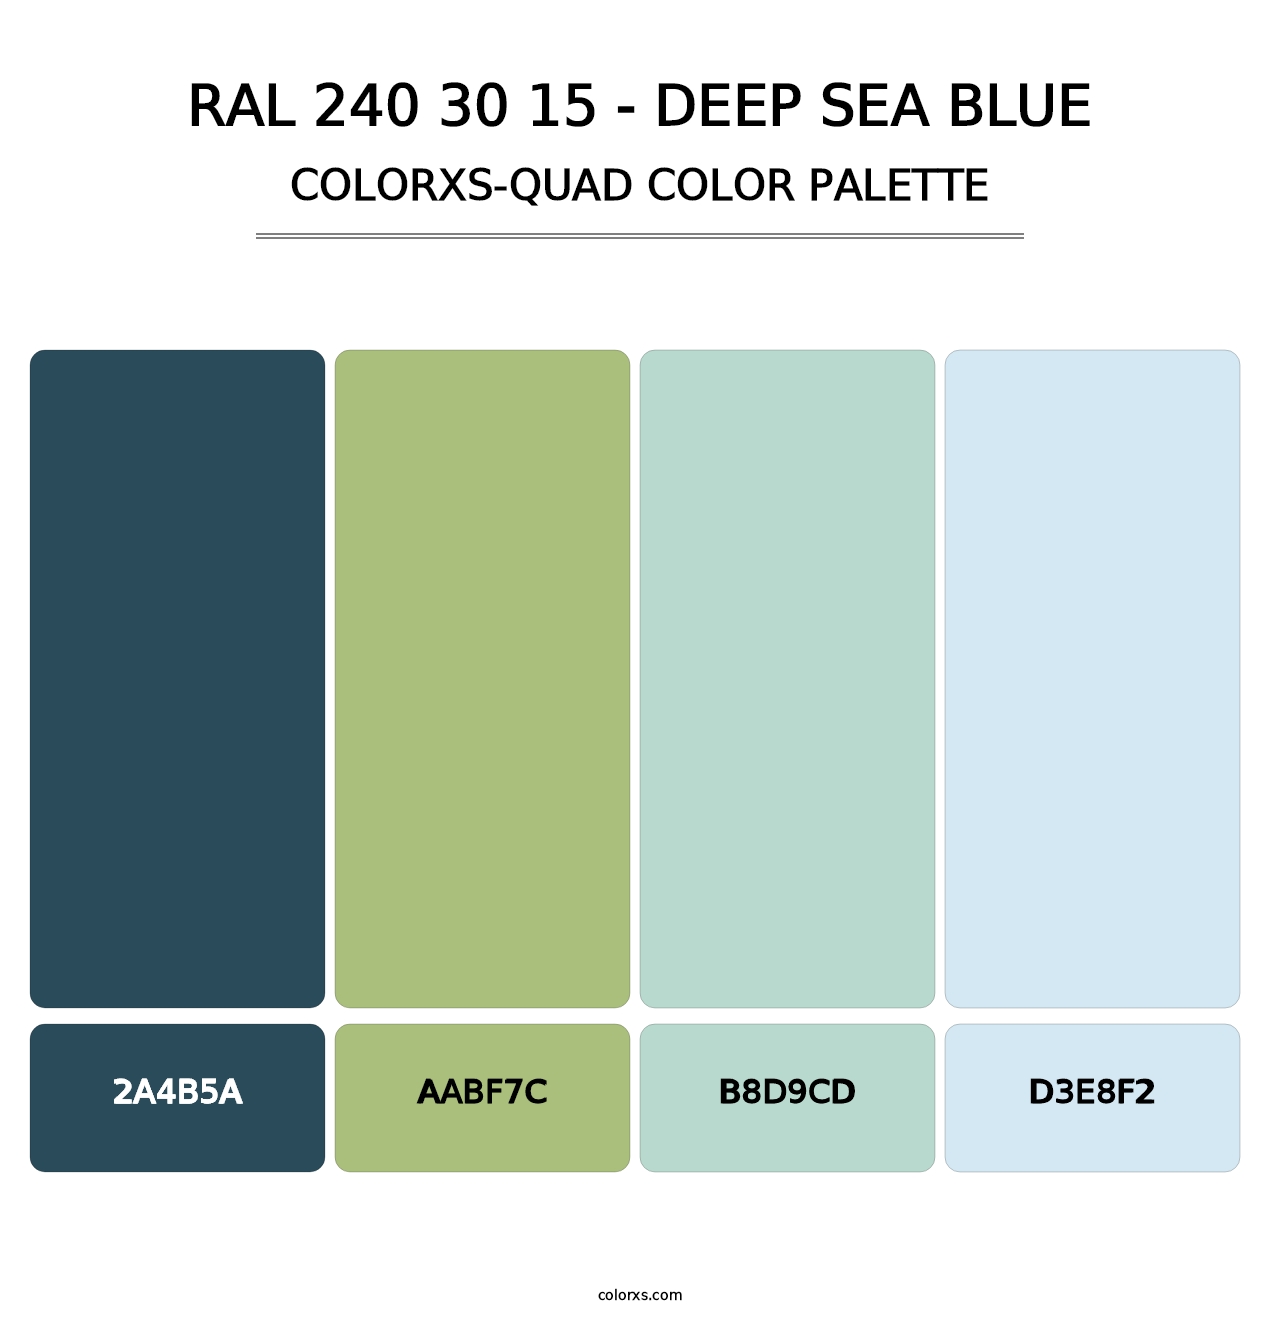 RAL 240 30 15 - Deep Sea Blue - Colorxs Quad Palette